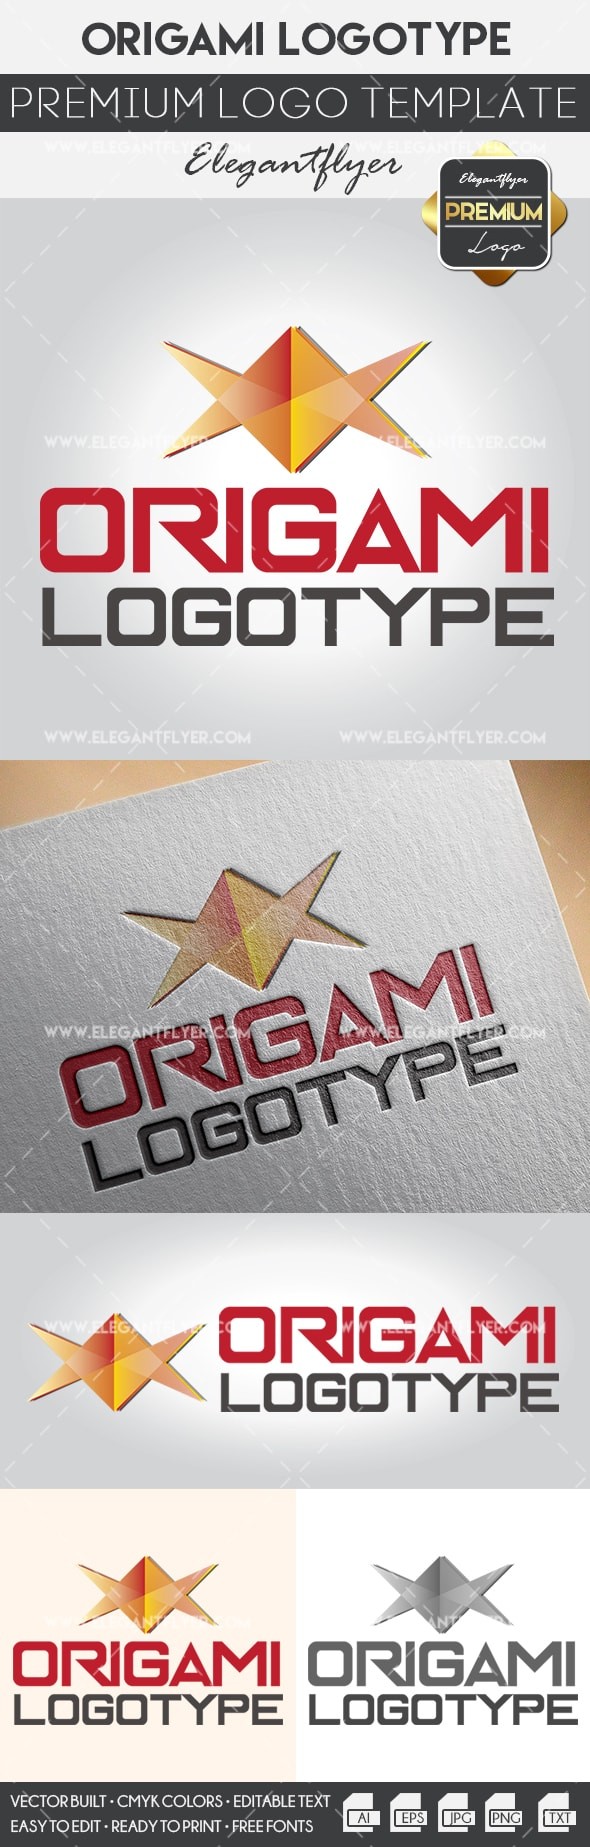 Origami by ElegantFlyer